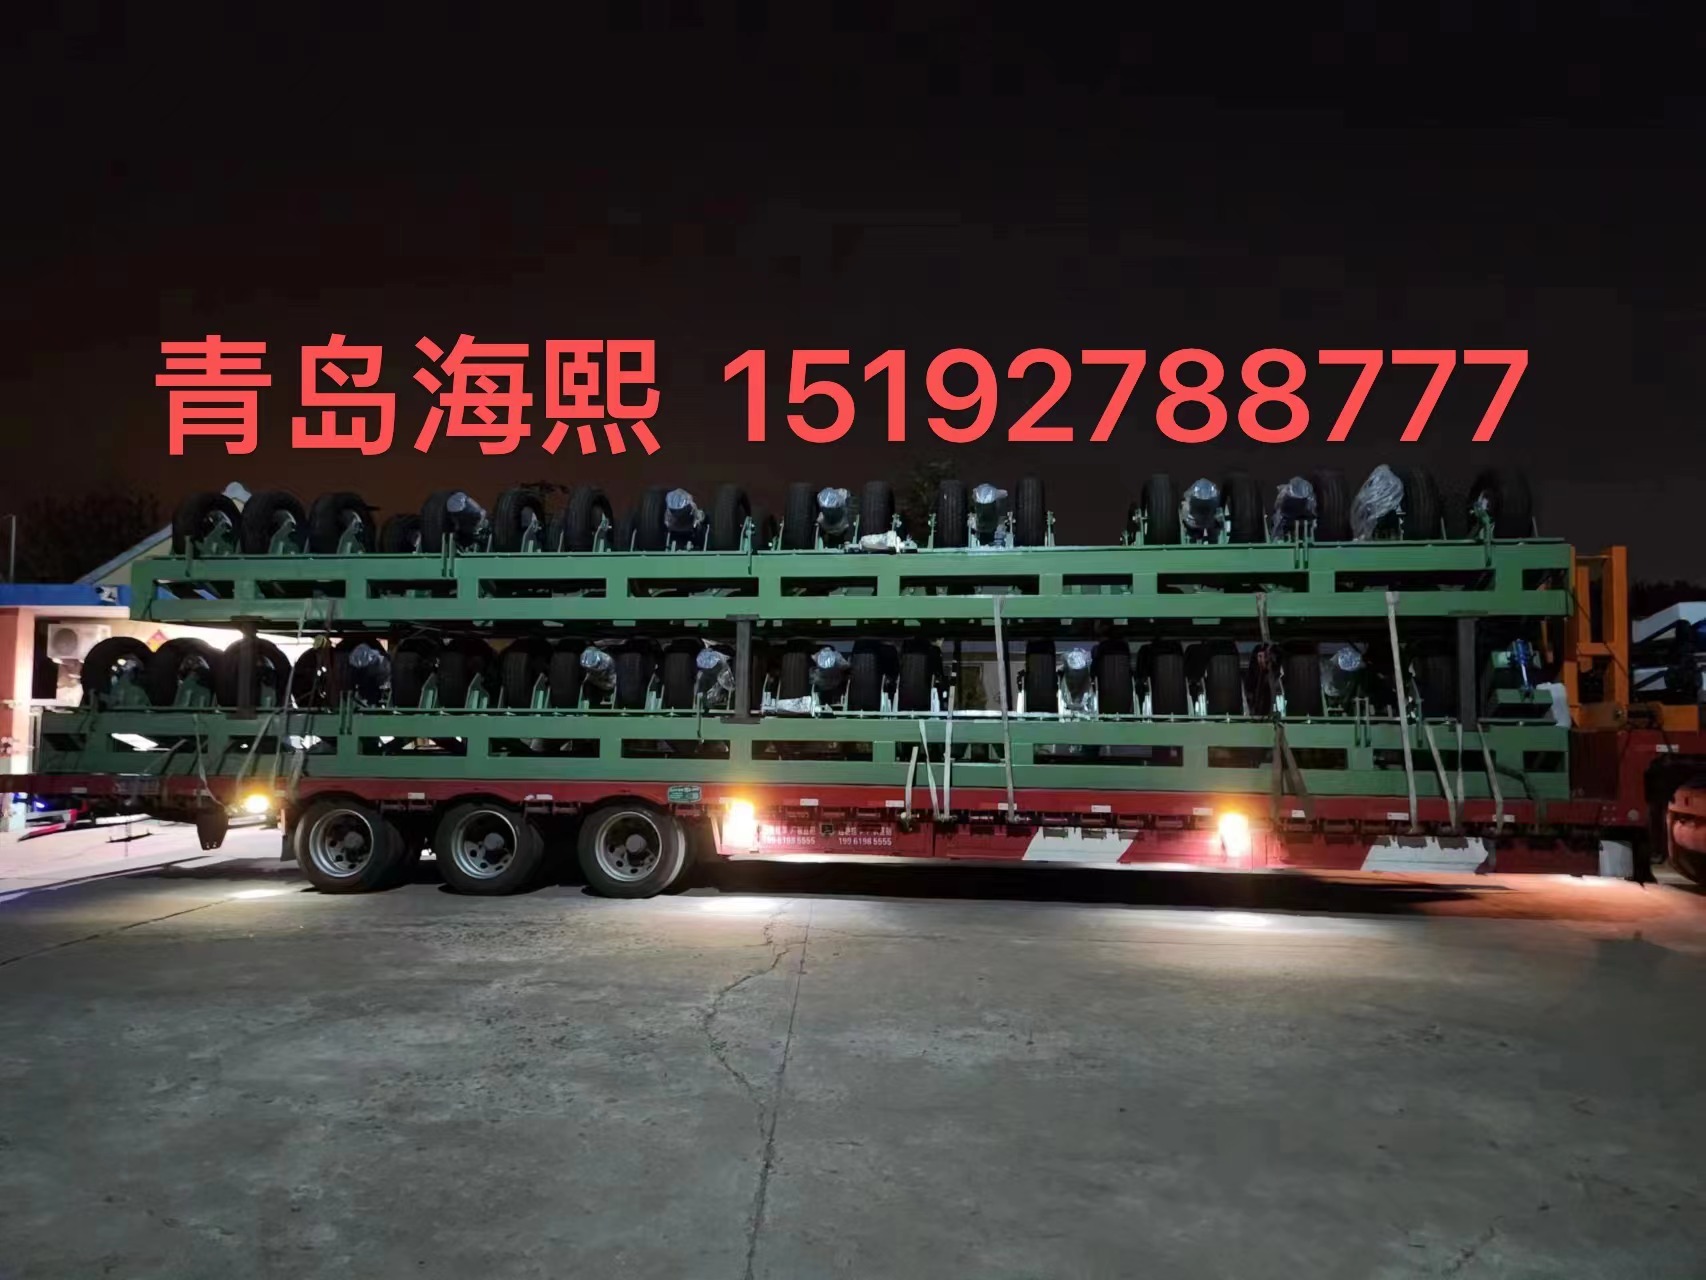 Hebei Huadun pipe manufacturing Co., Ltd. second car